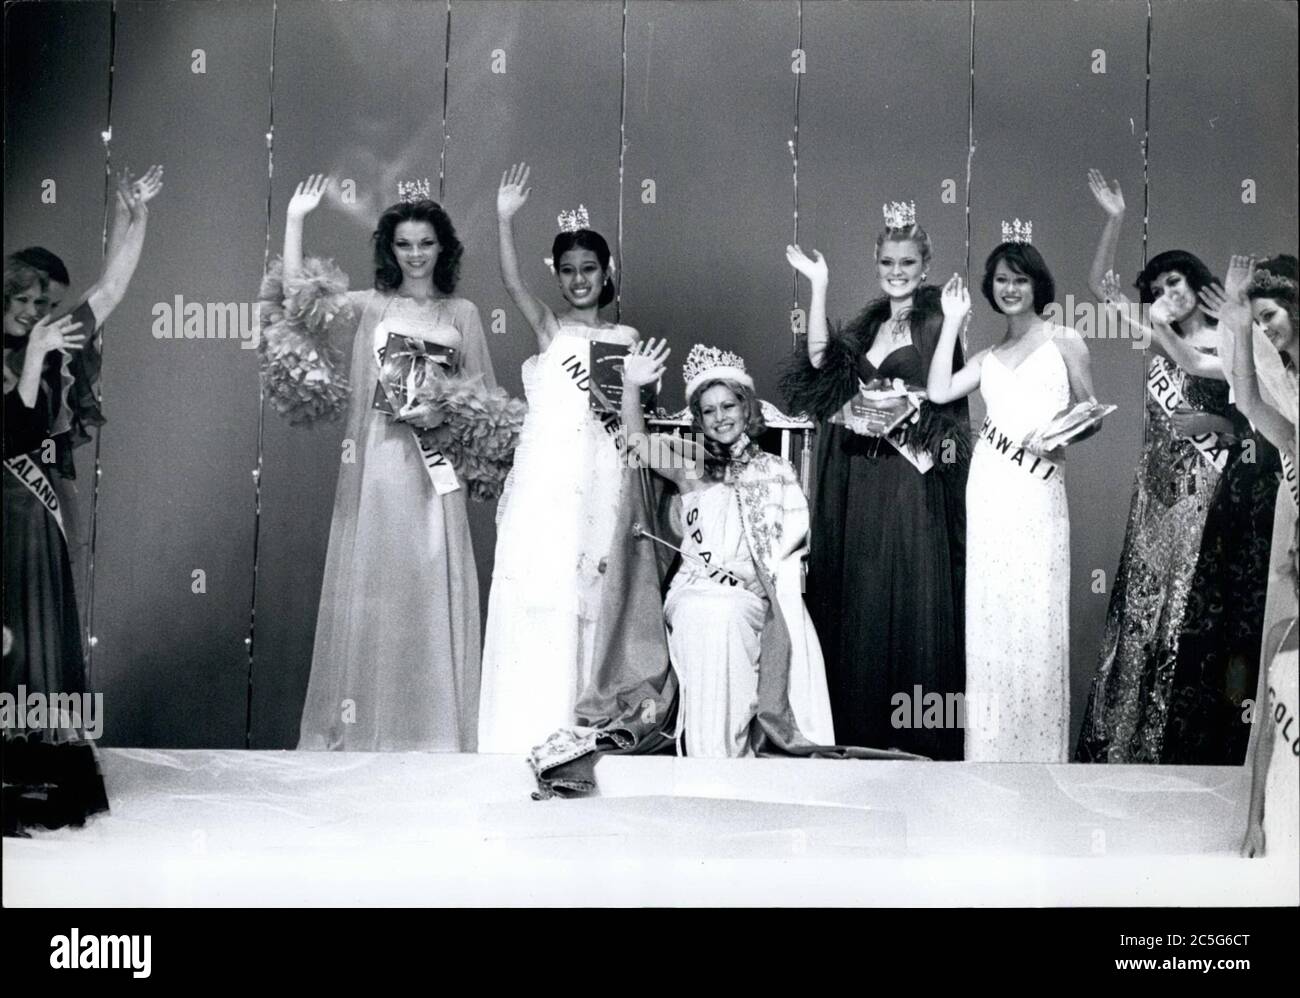 1 luglio 1977 - Tokyo, Giappone - i vincitori di Miss International 1977 si sono aggiudicato la cerimonia. Miss Spagna, PILAR MEDINA CANADELL, centro; 1° classificato, Miss Germania, DAGMAR GABRIELE WINKLER; 2° classificato a destra del centro; Miss Indonesia, INDRI Hapsari SOEHARTO, a sinistra del centro; 3° classificato, Miss Hawaii, PRUNELLA JULLE NICKSON, seconda a destra dal centro; 4° classificato Imperial Theater, Miss BIT, Miss BIT, al Miss BIT, al Miss BIT, al Credit Garden (Miss BIT, USA). © Keystone Pictures USA/ZUMAPRESS.com) Foto Stock